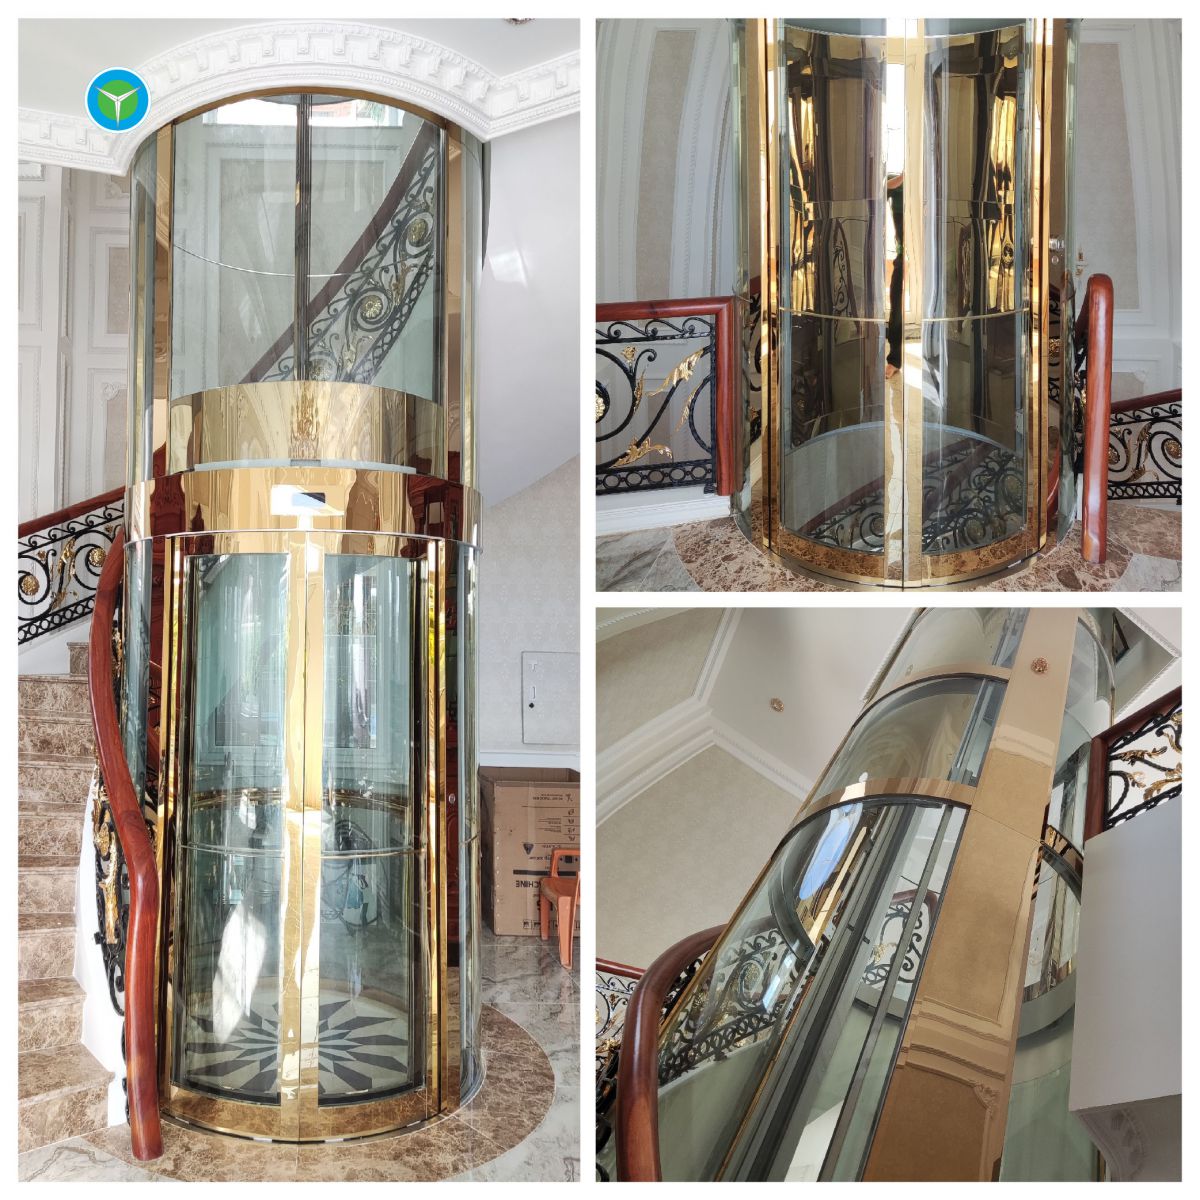 Báo giá thang máy gia đình trọn gói từ 250 - 400kg | Thang máy Hoàng Triều